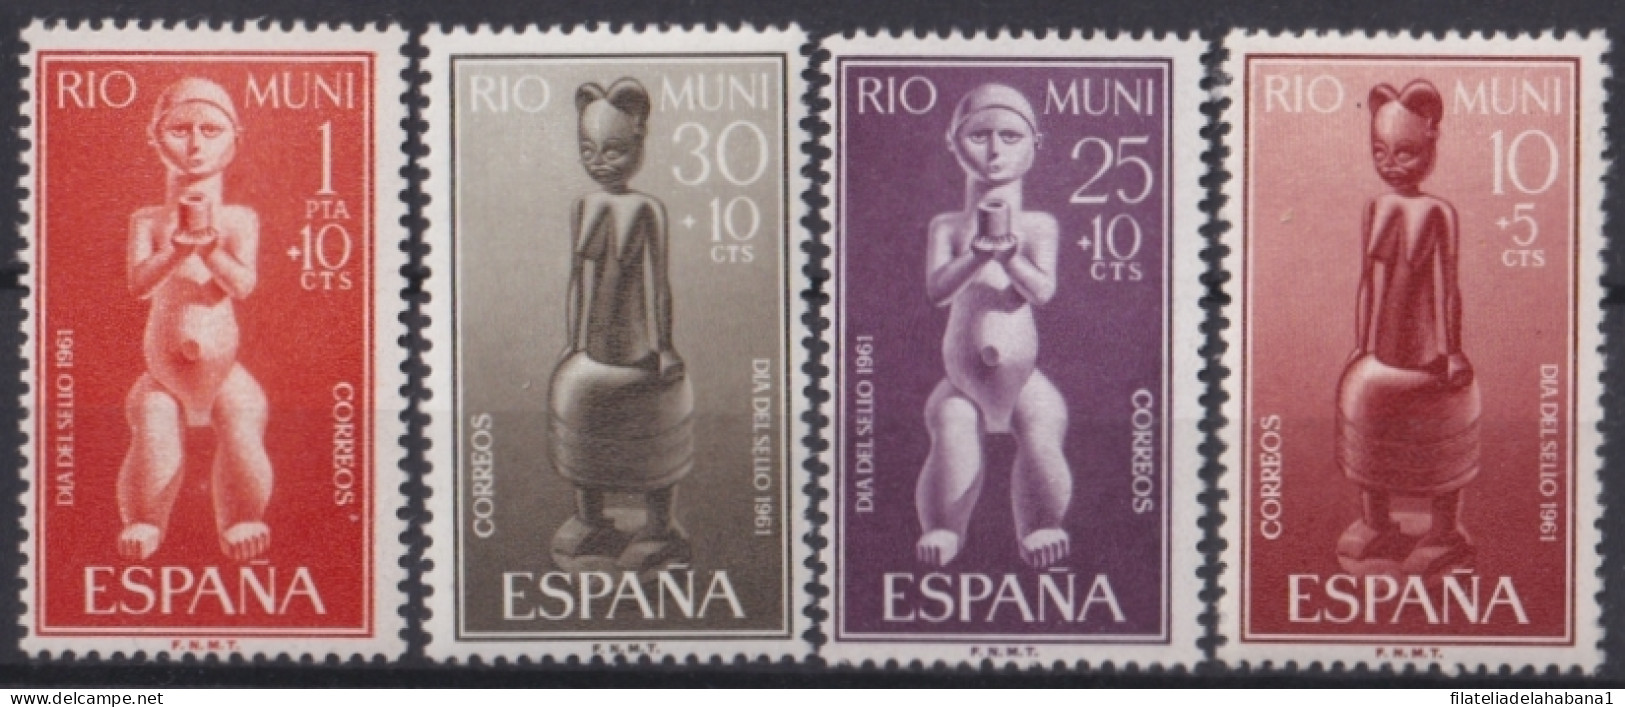 F-EX45579 ESPAÑA SPAIN RIO MUNI MNH 1961 TOTEM ETHNIC ART SCULPTURE.  - Rio Muni